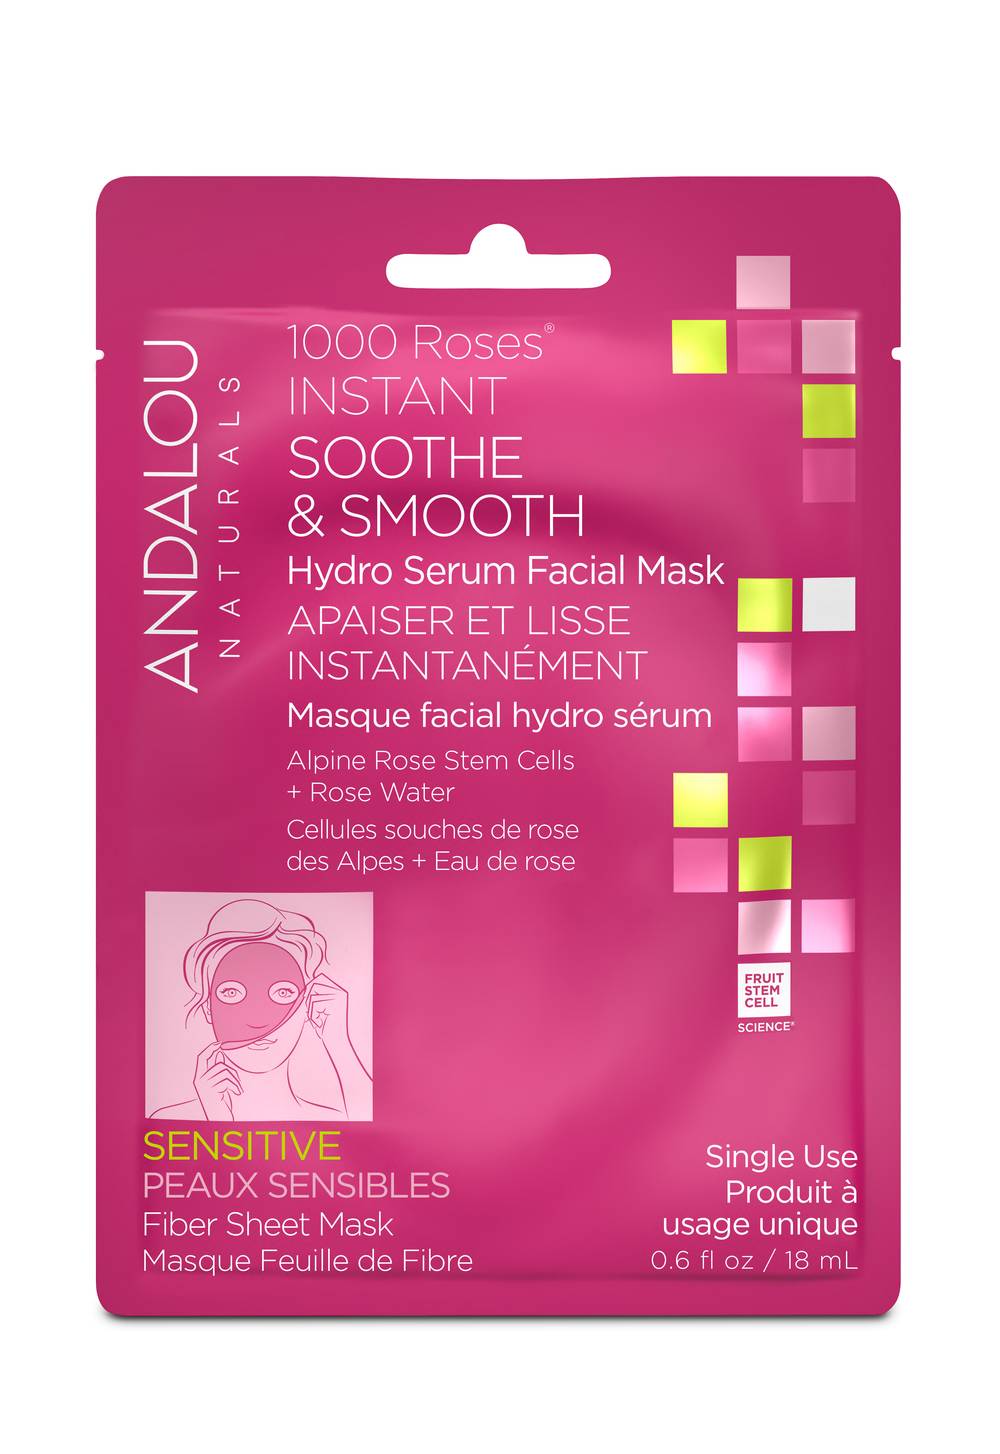 Andalou Hydro Serum Facial Sheet Mask 1000 Roses (1 ct)